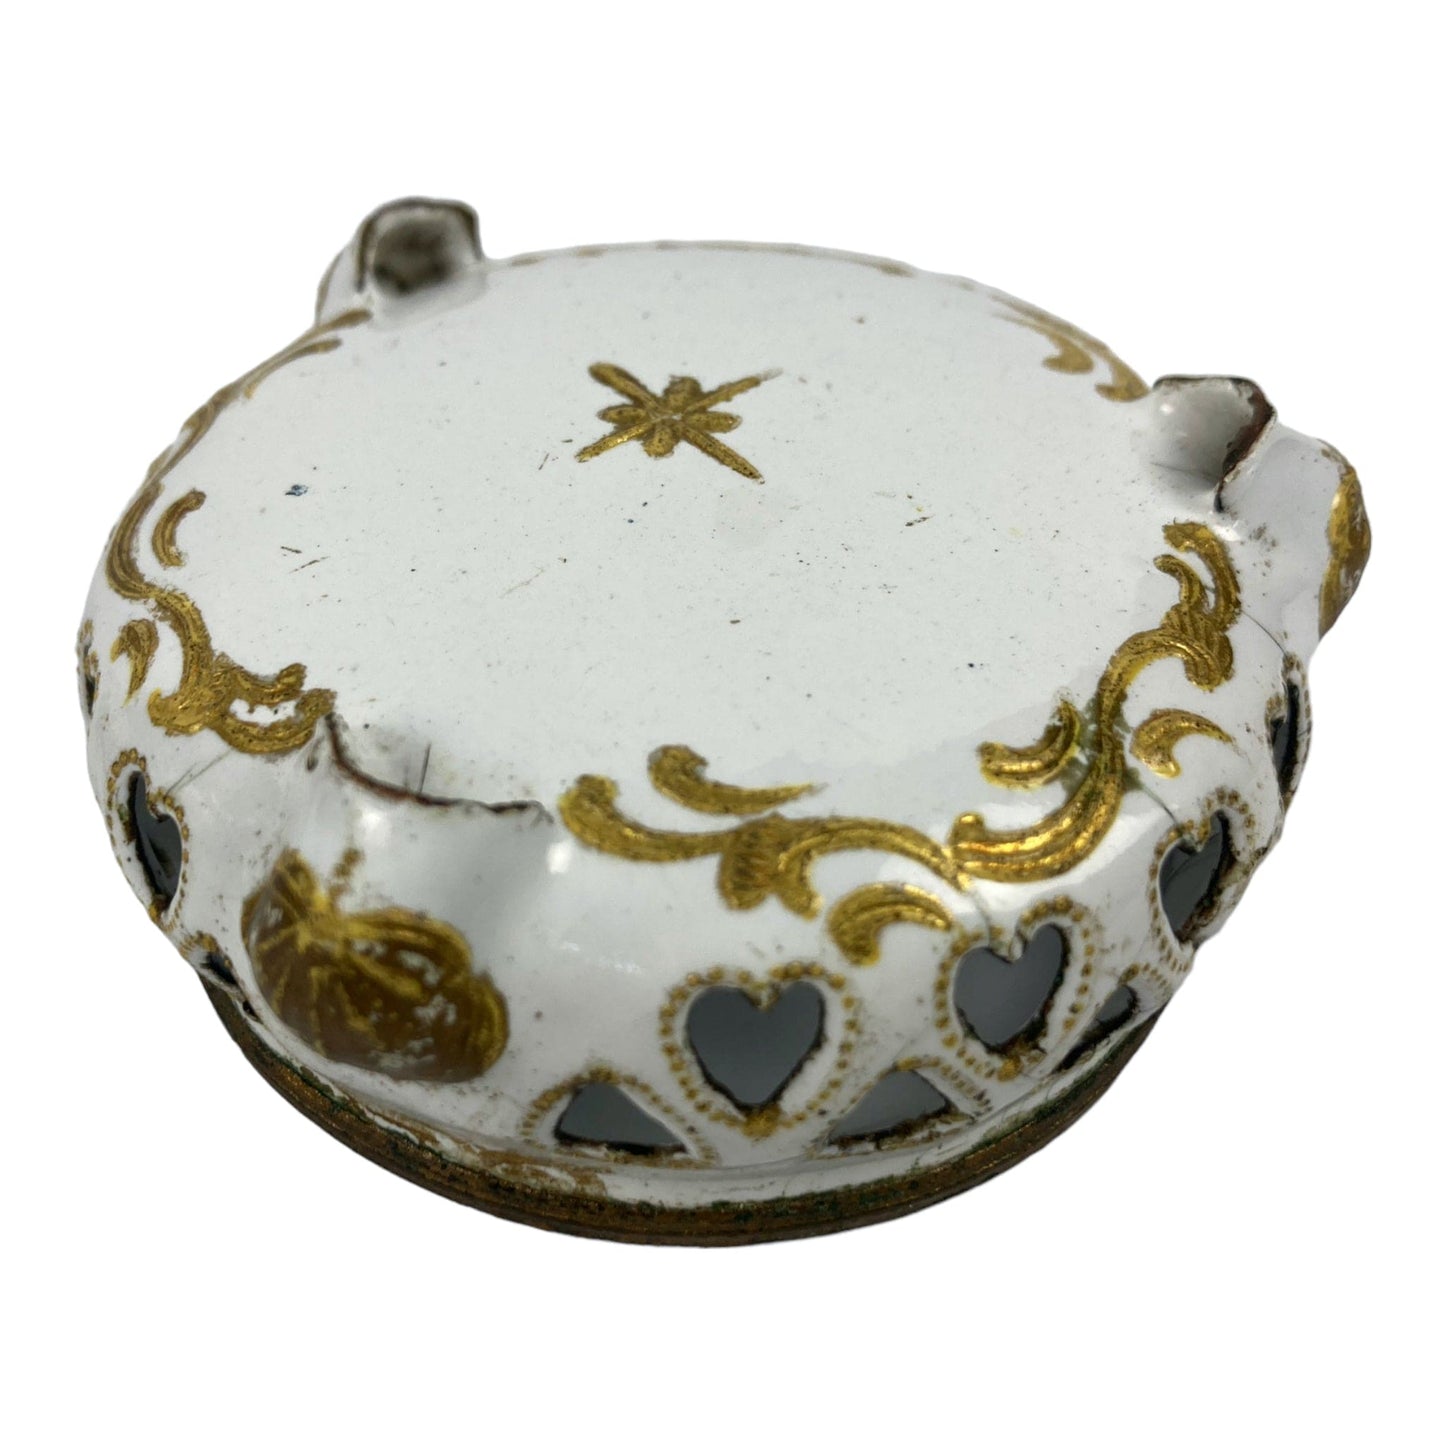 18世紀のバタシー。 ホワイトとゴールドのエナメル銅製テーブルサービスアイテムのペア、調味料、ソルトポット